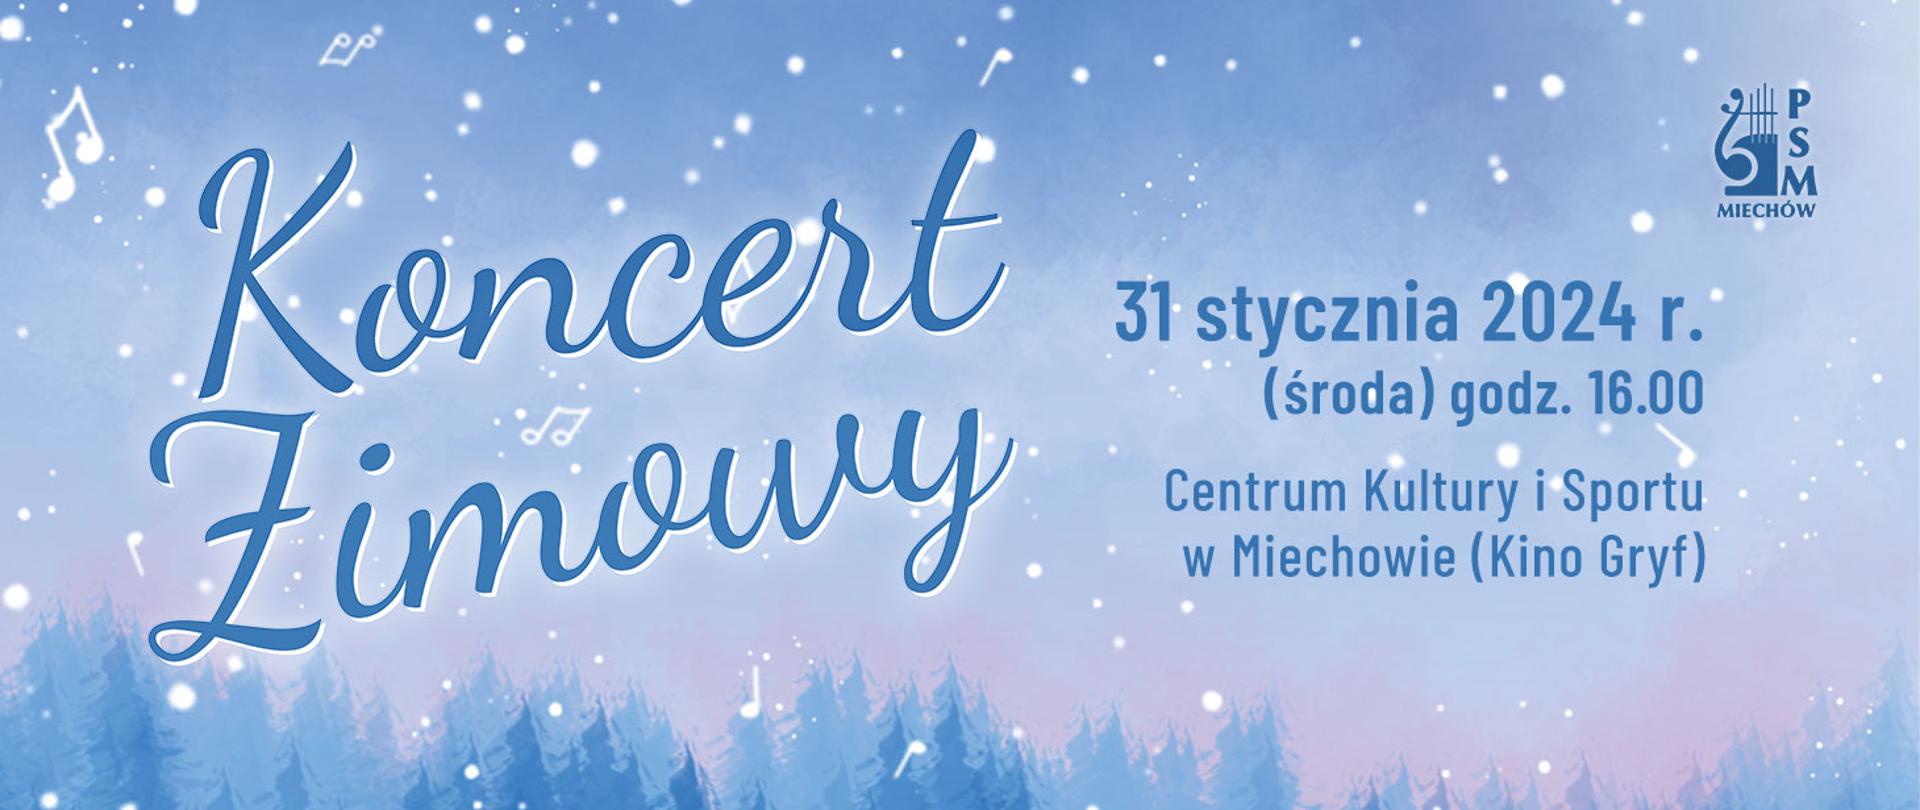 Plakat na jasnoniebieskim tle z ikonami śnieżynek i nut oraz tekstem informującym o dacie i miejscu koncertu